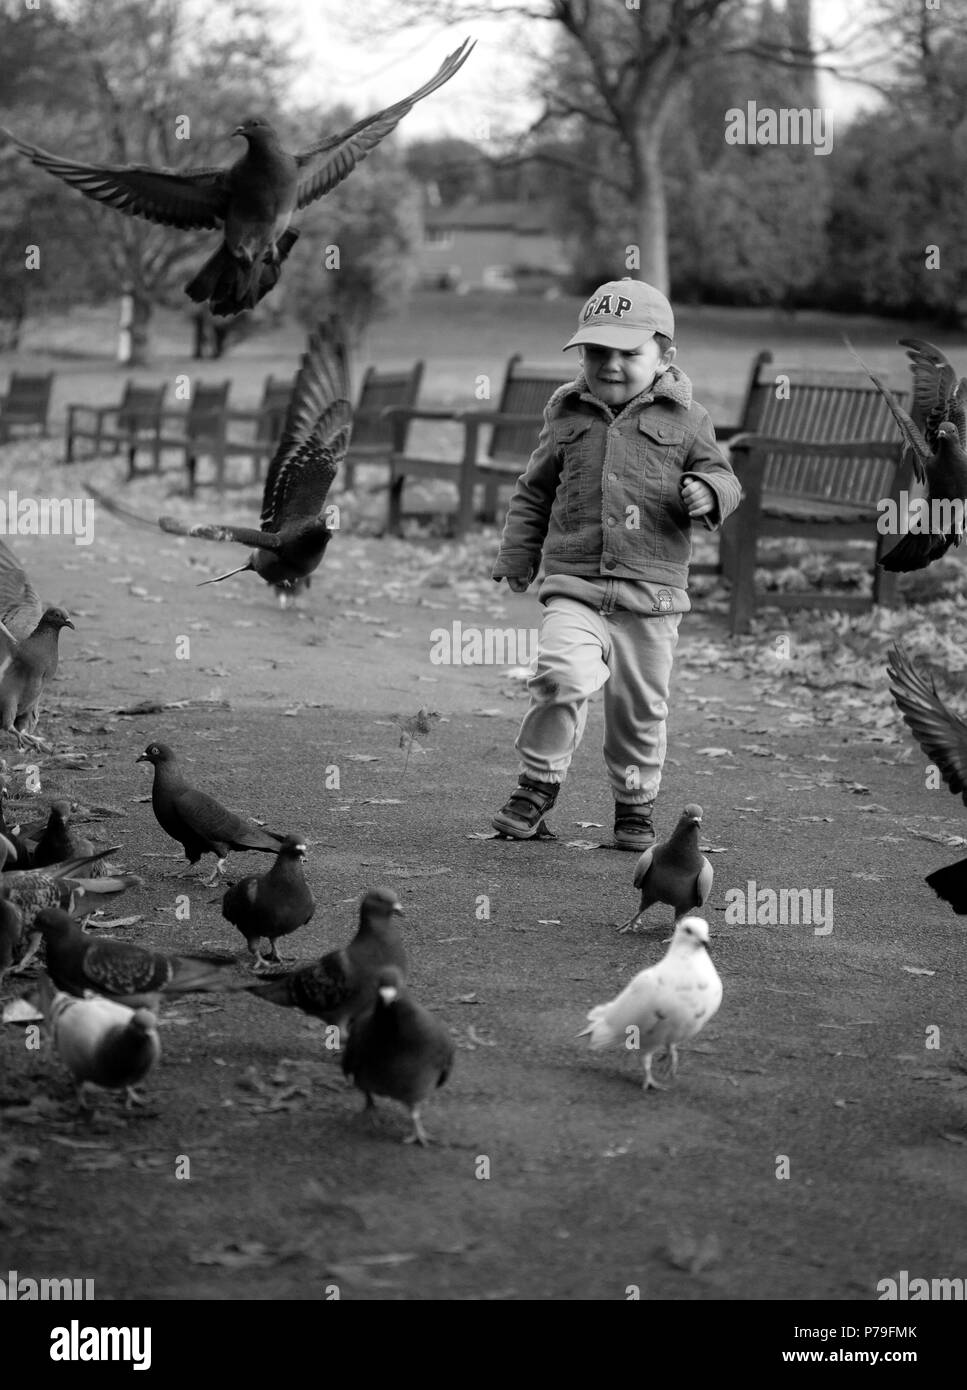 Un garçon courir après les pigeons dans le parc Banque D'Images